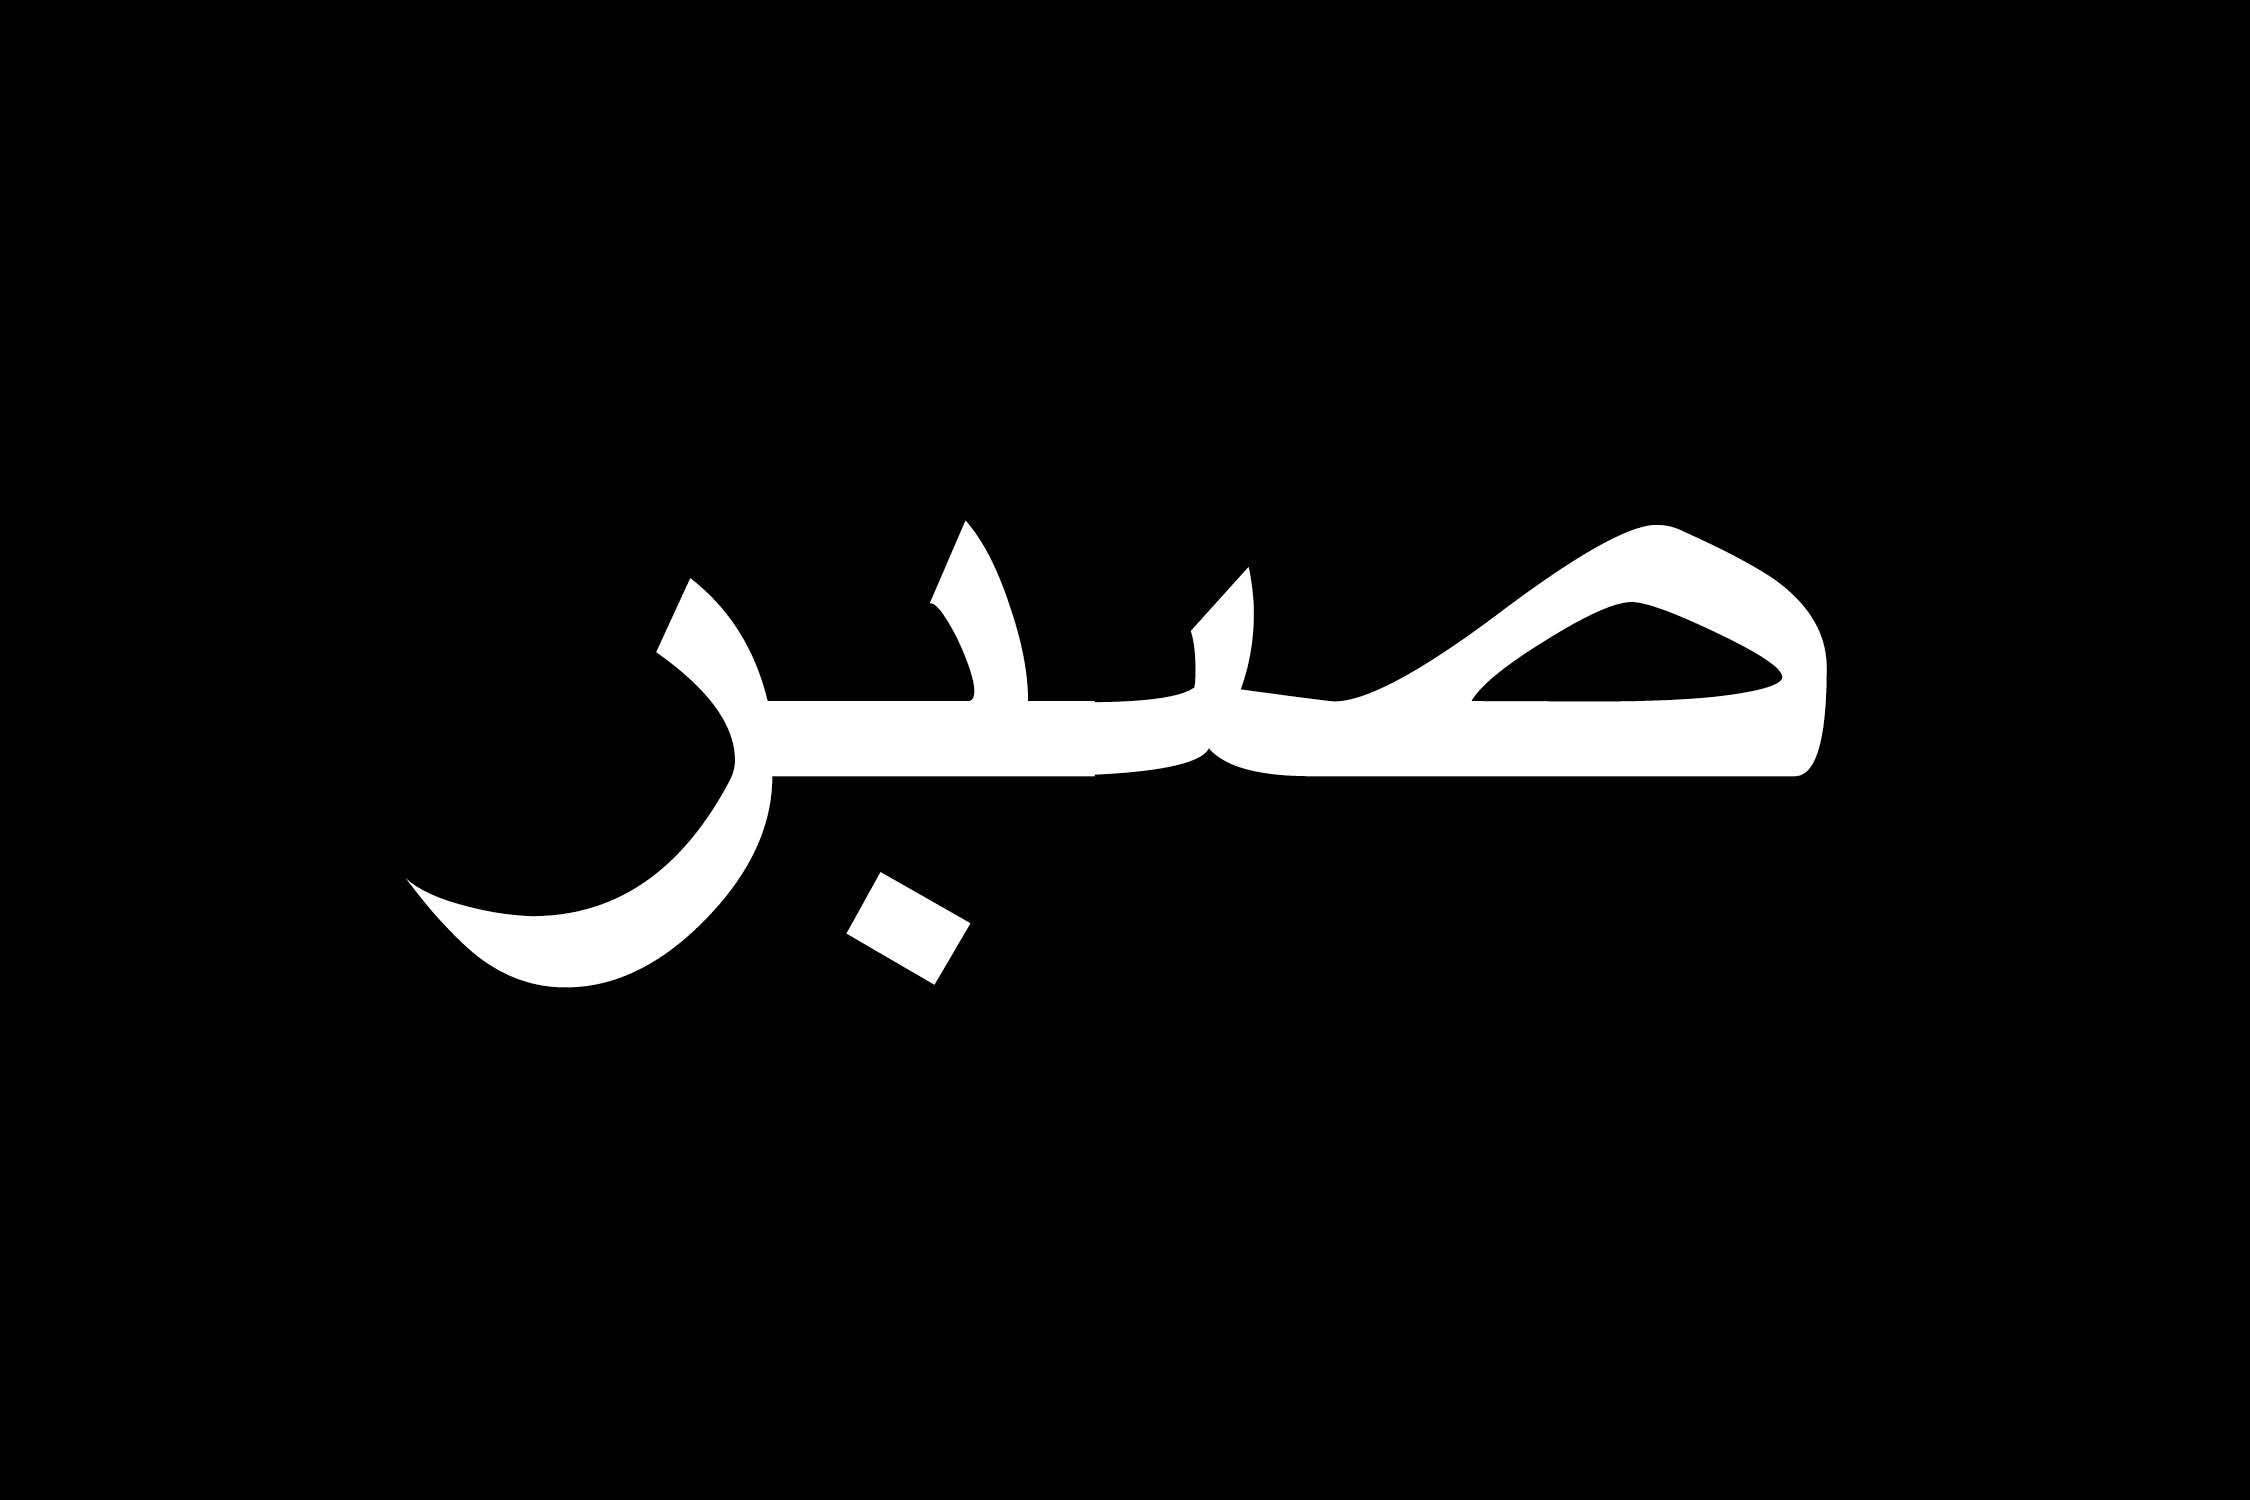 Терпят 4 буквы. Терпение на арабском. Сабр терпение на арабском. Надпись сабр на арабском. Арабские надписи на черном фоне.